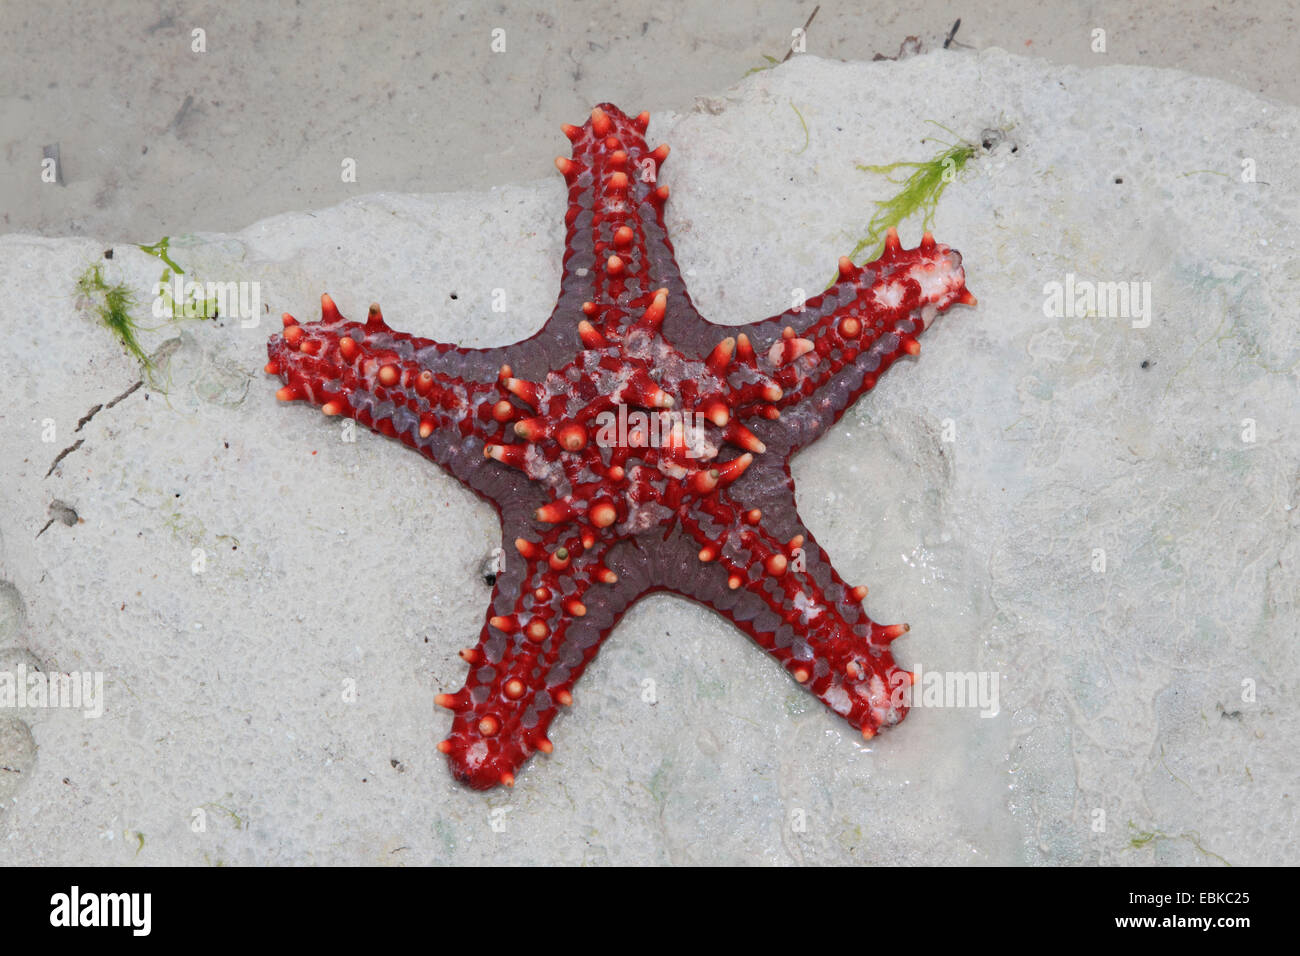 Coussin Panamic étoile de mer (Pentaceraster cumingi), red sea star sur une plage, la Tanzanie, Sansibar Banque D'Images